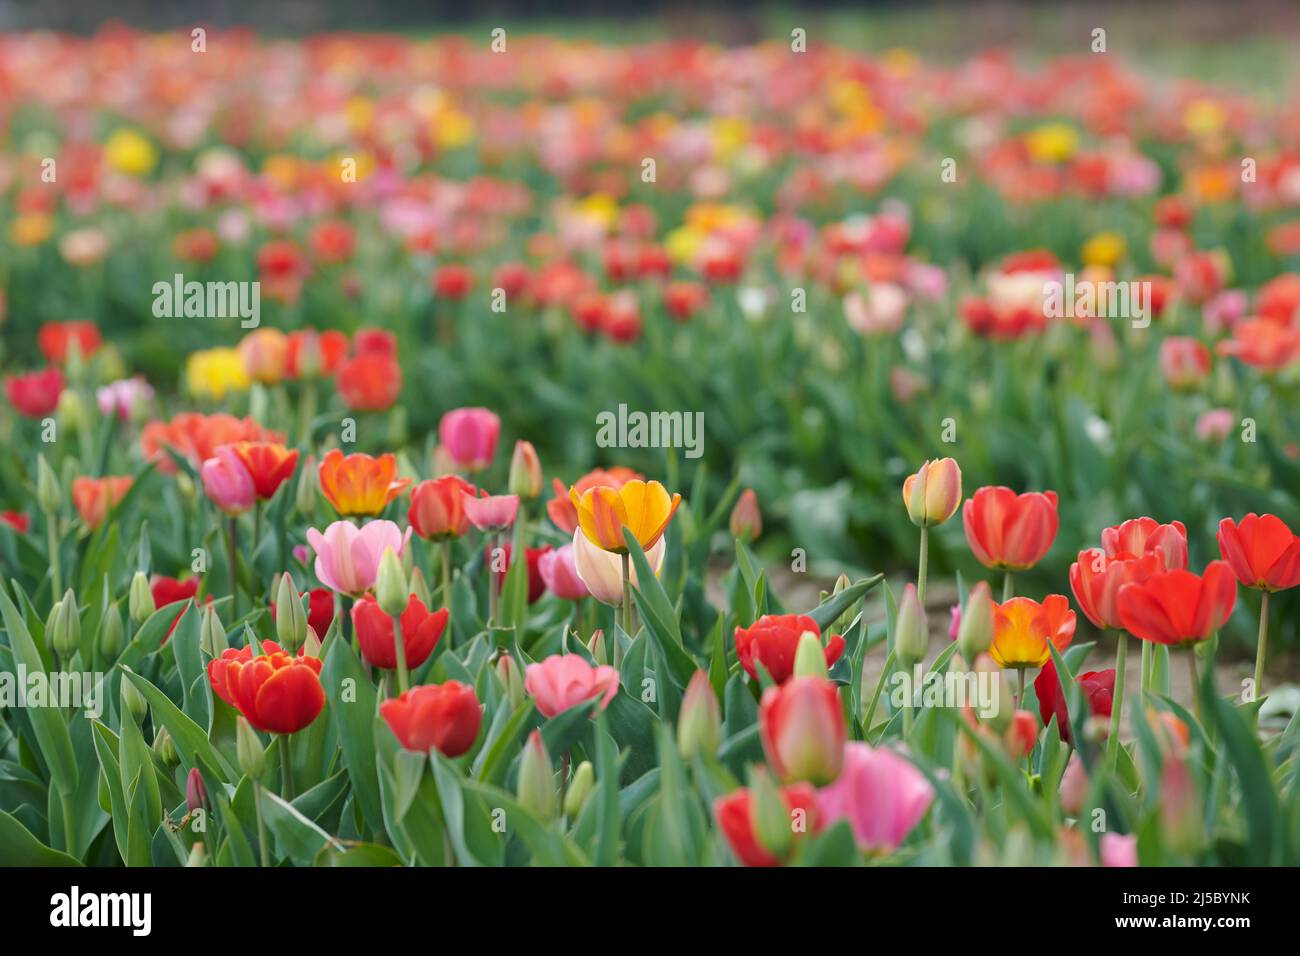 Feld mit Tulpen zum selber pfluecken. Tulpen in verschiedenen Farben eines Landwirts laden zum selber pluecken ein. Stock Photo